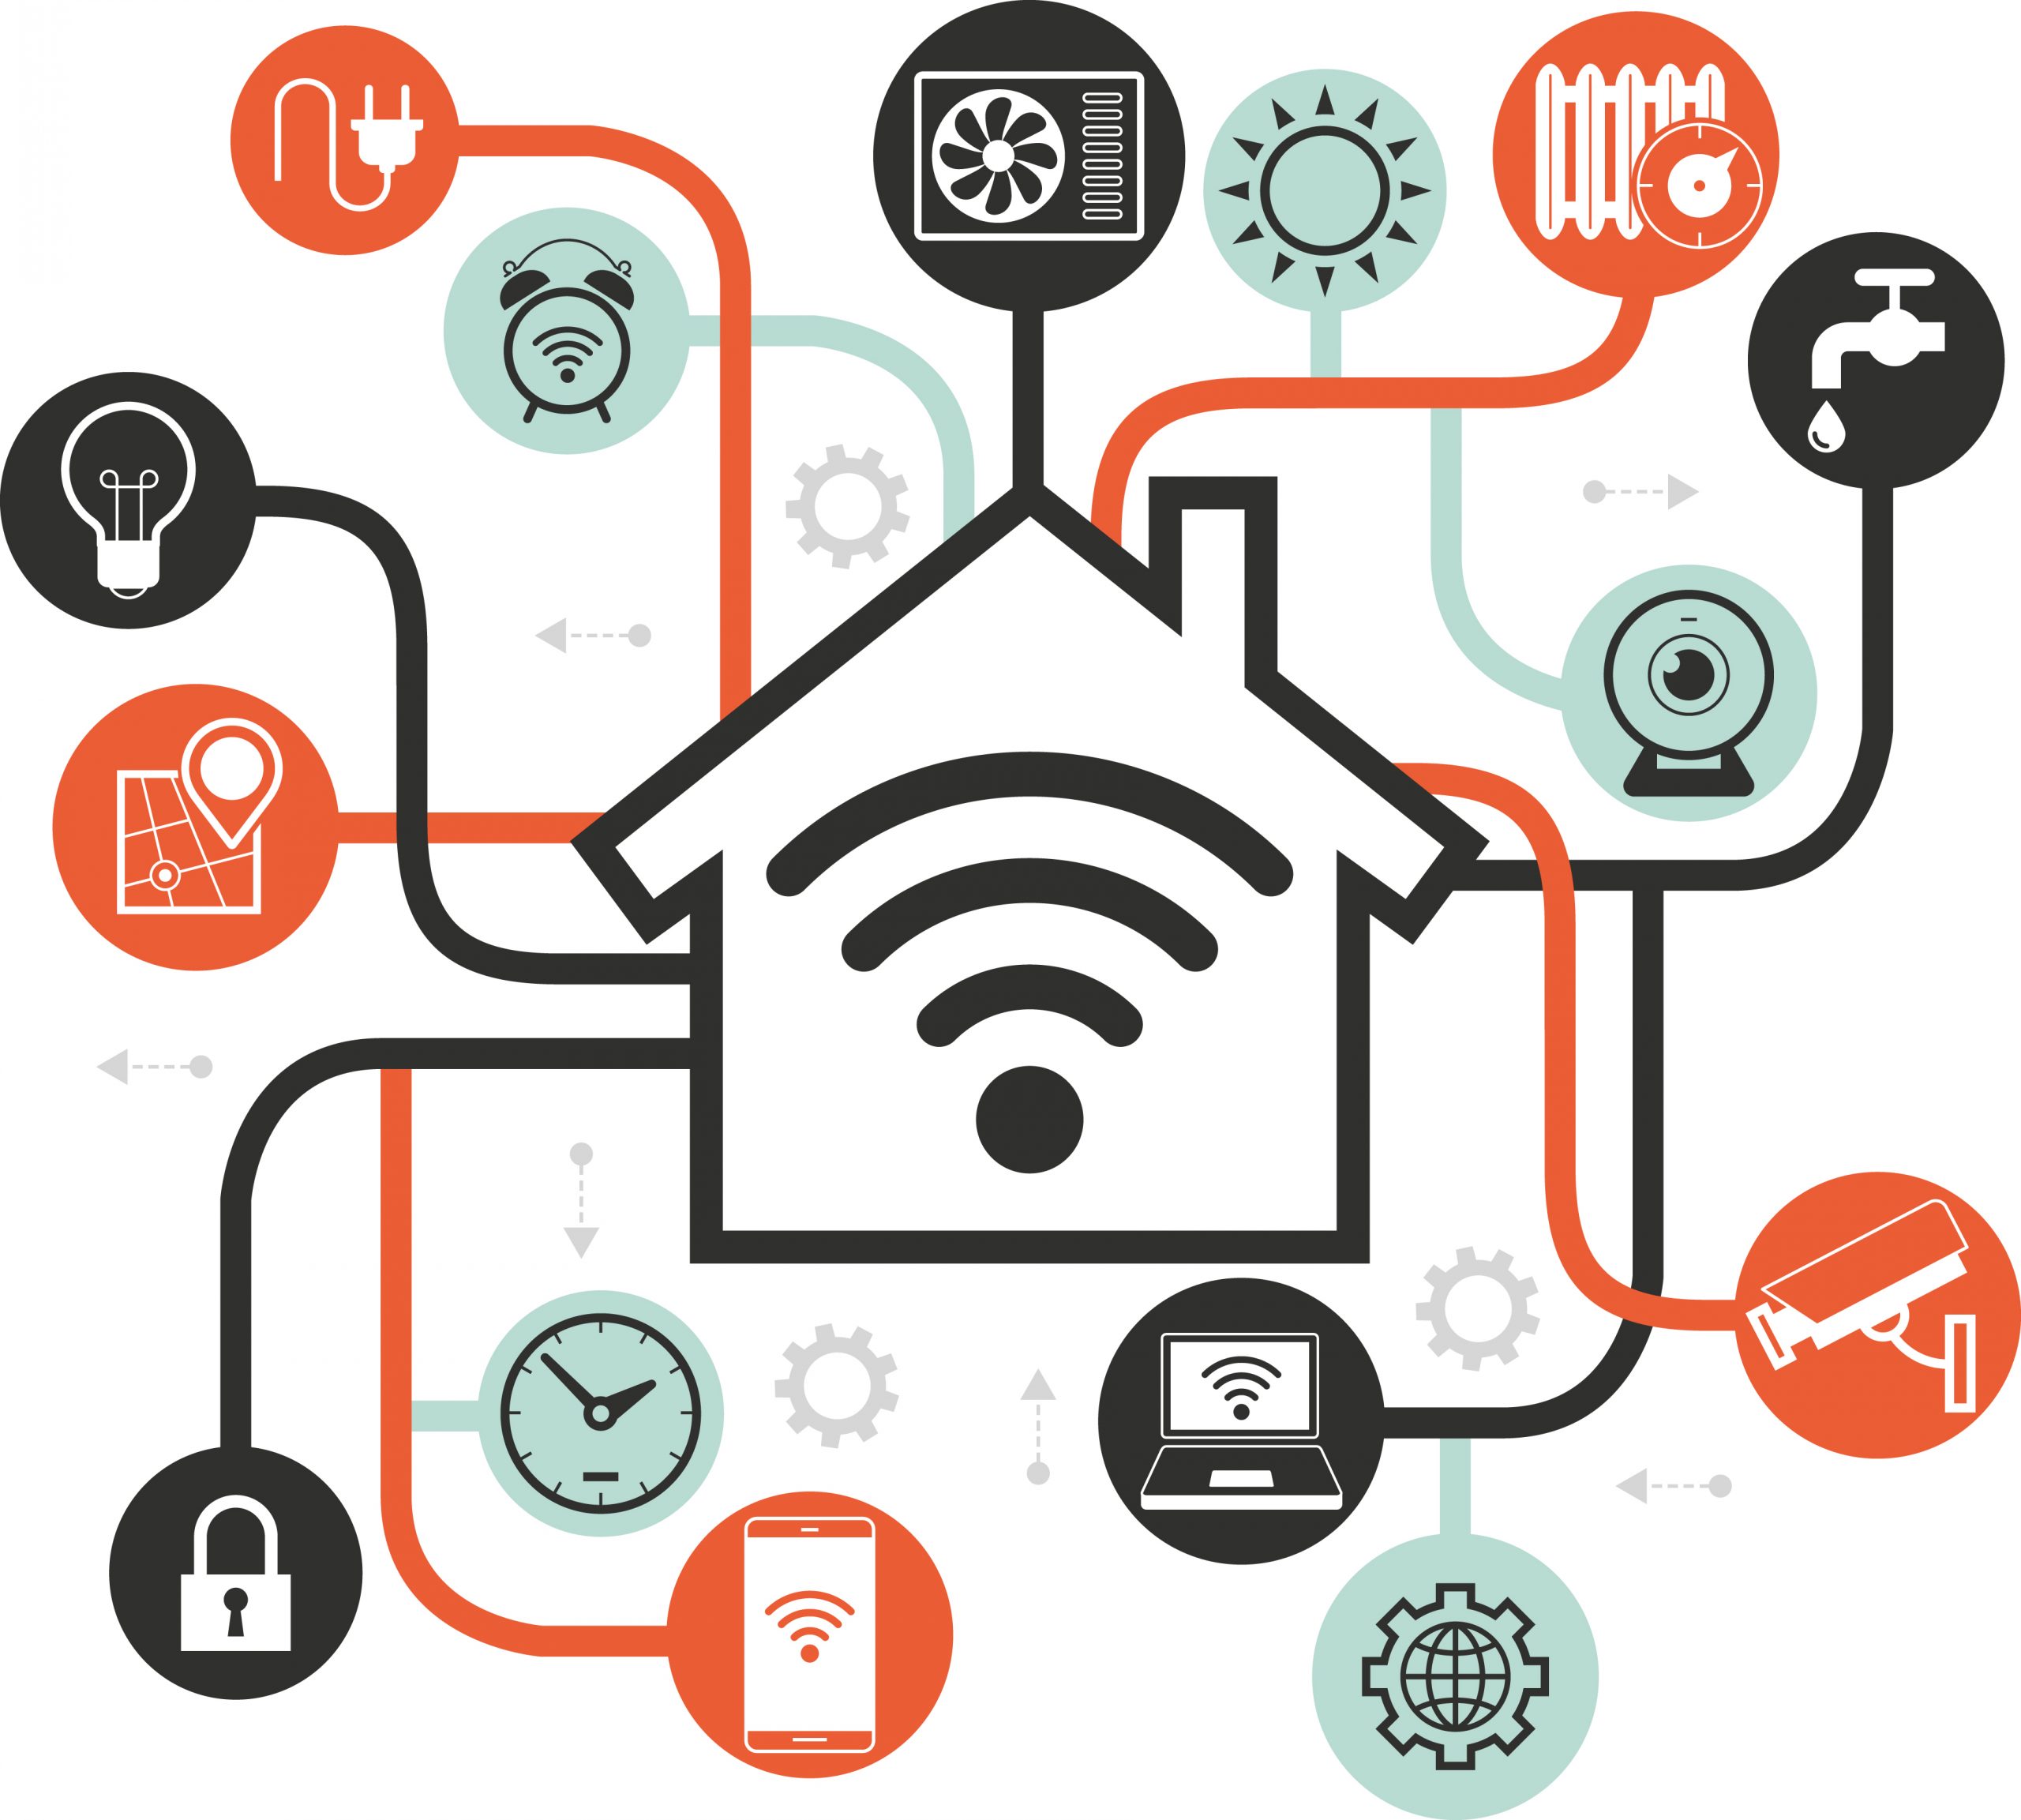 Умный дом - Smart home - Домашняя автоматизация - Home automation - система автоматизации личного жилья